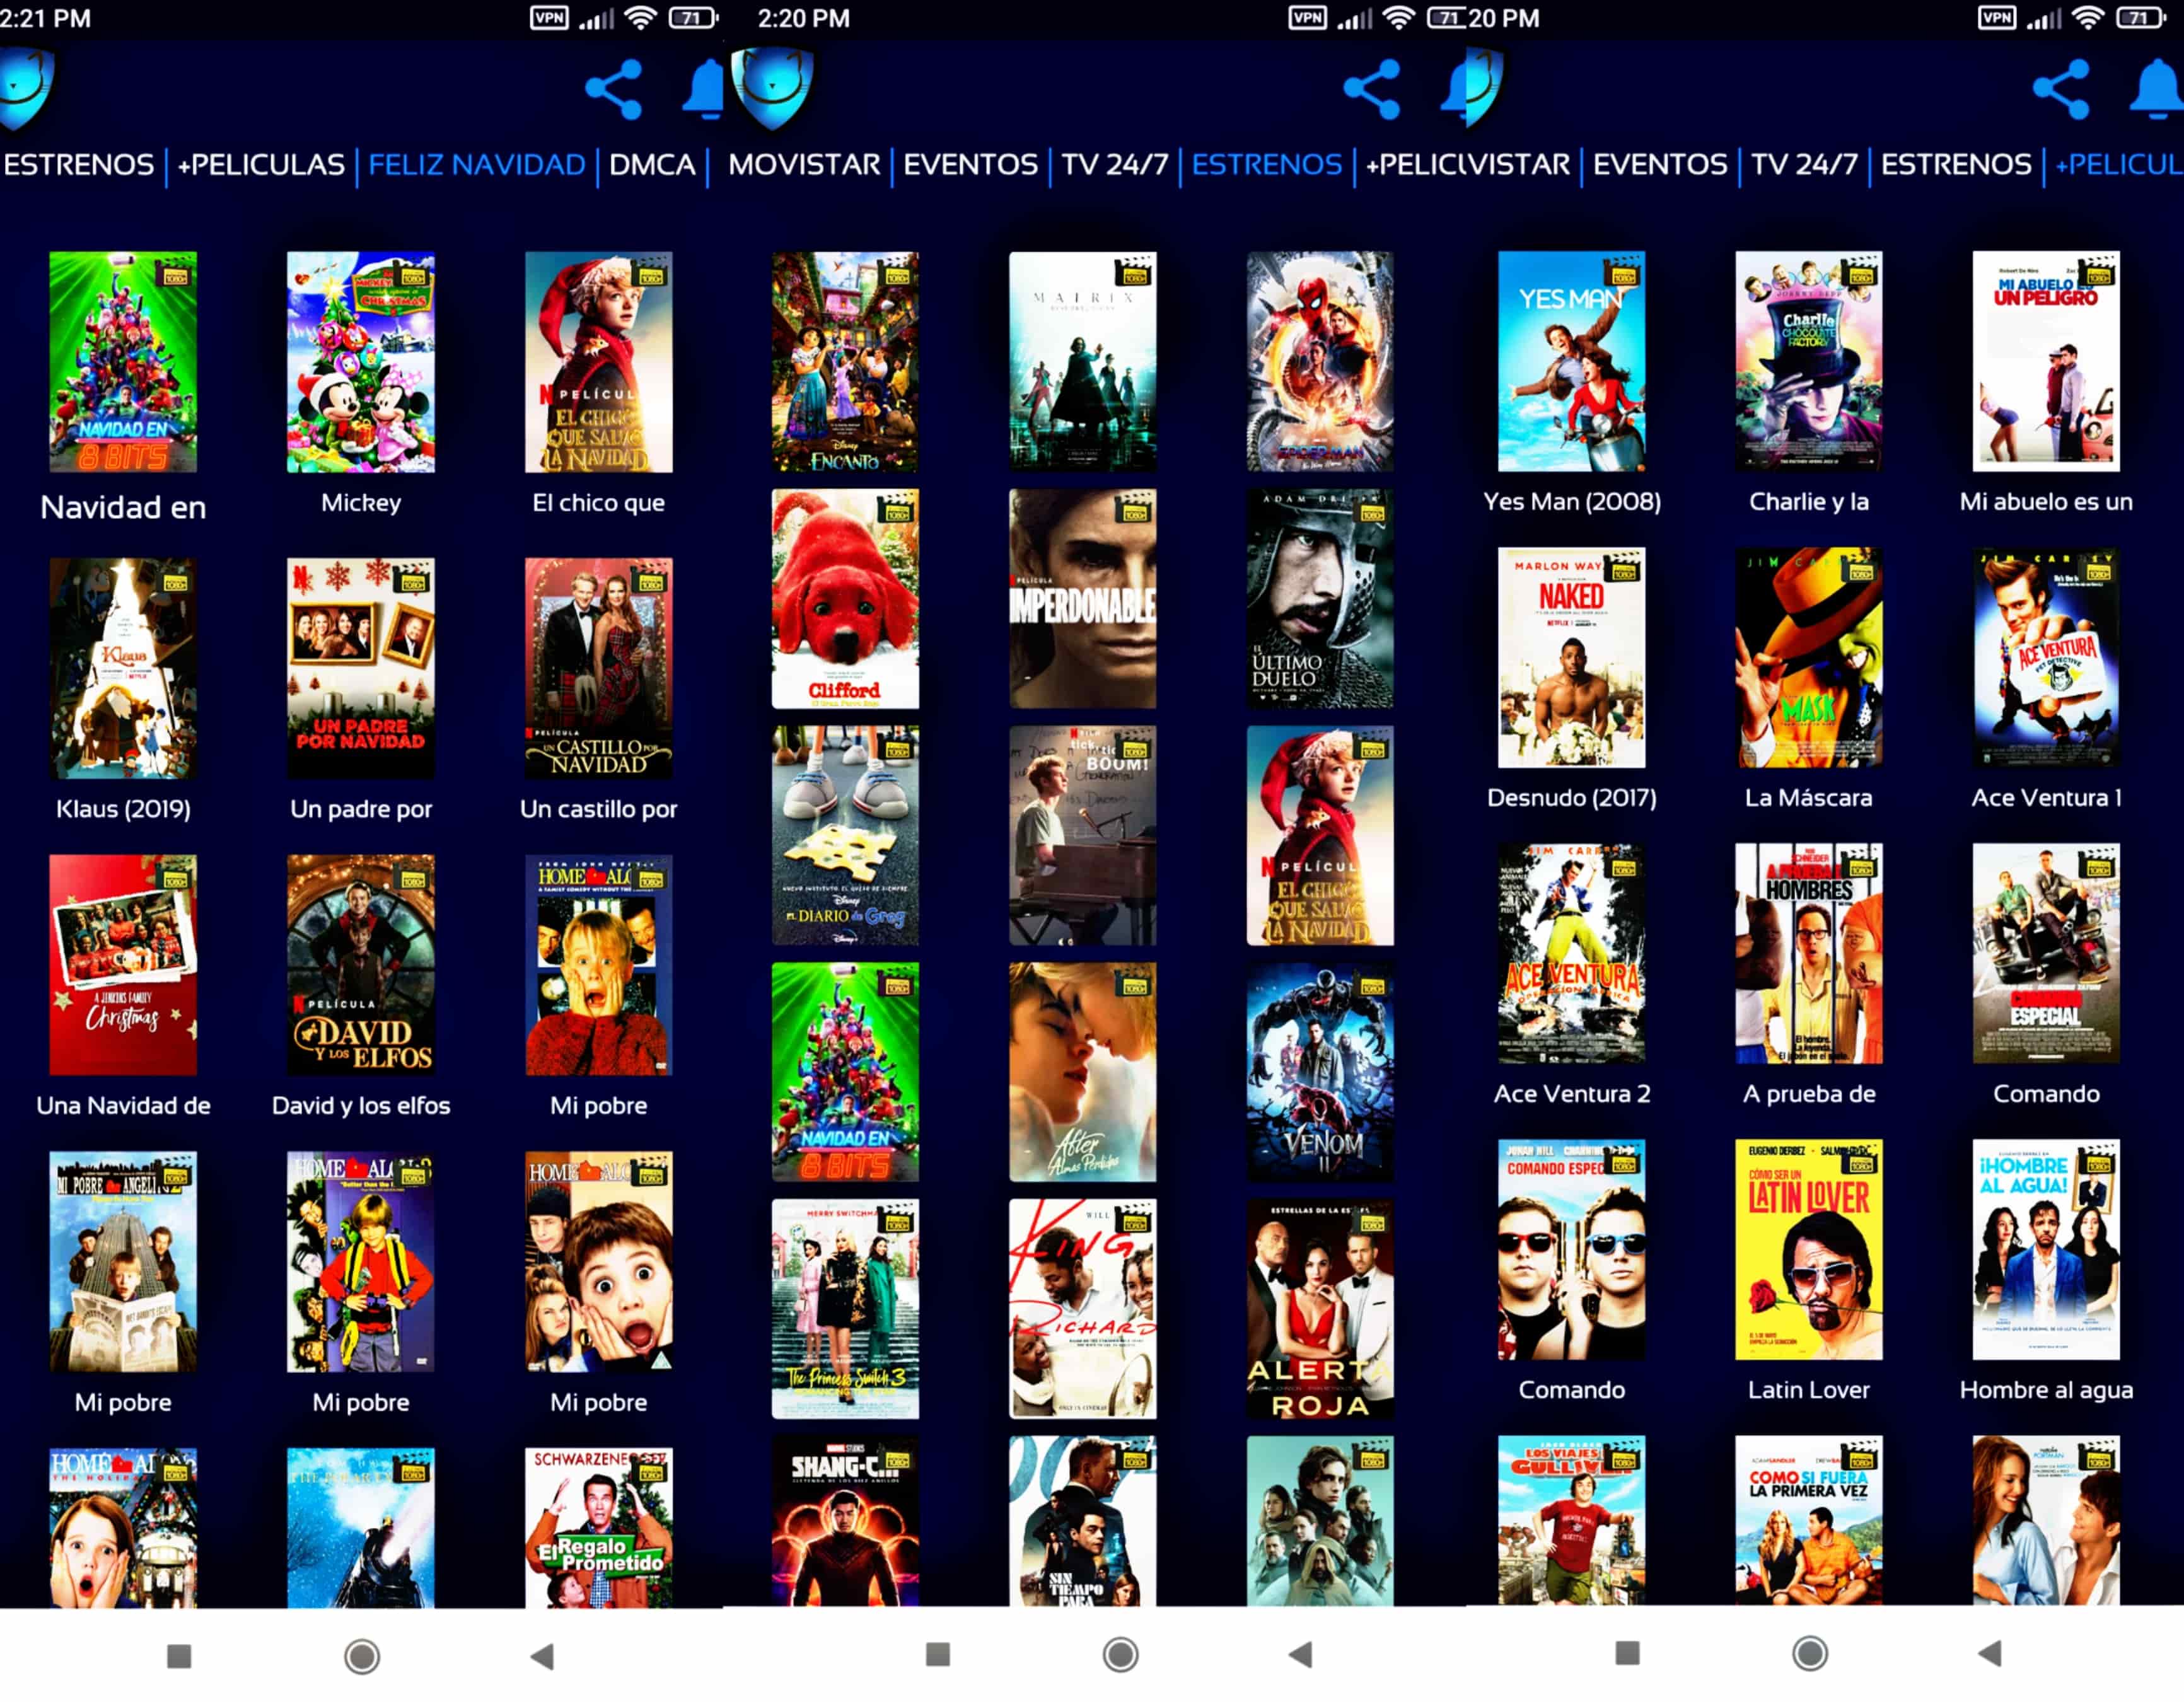 DESCARGAR NEKO TV APK V6.1 para Android (películas, tv, estrenos)